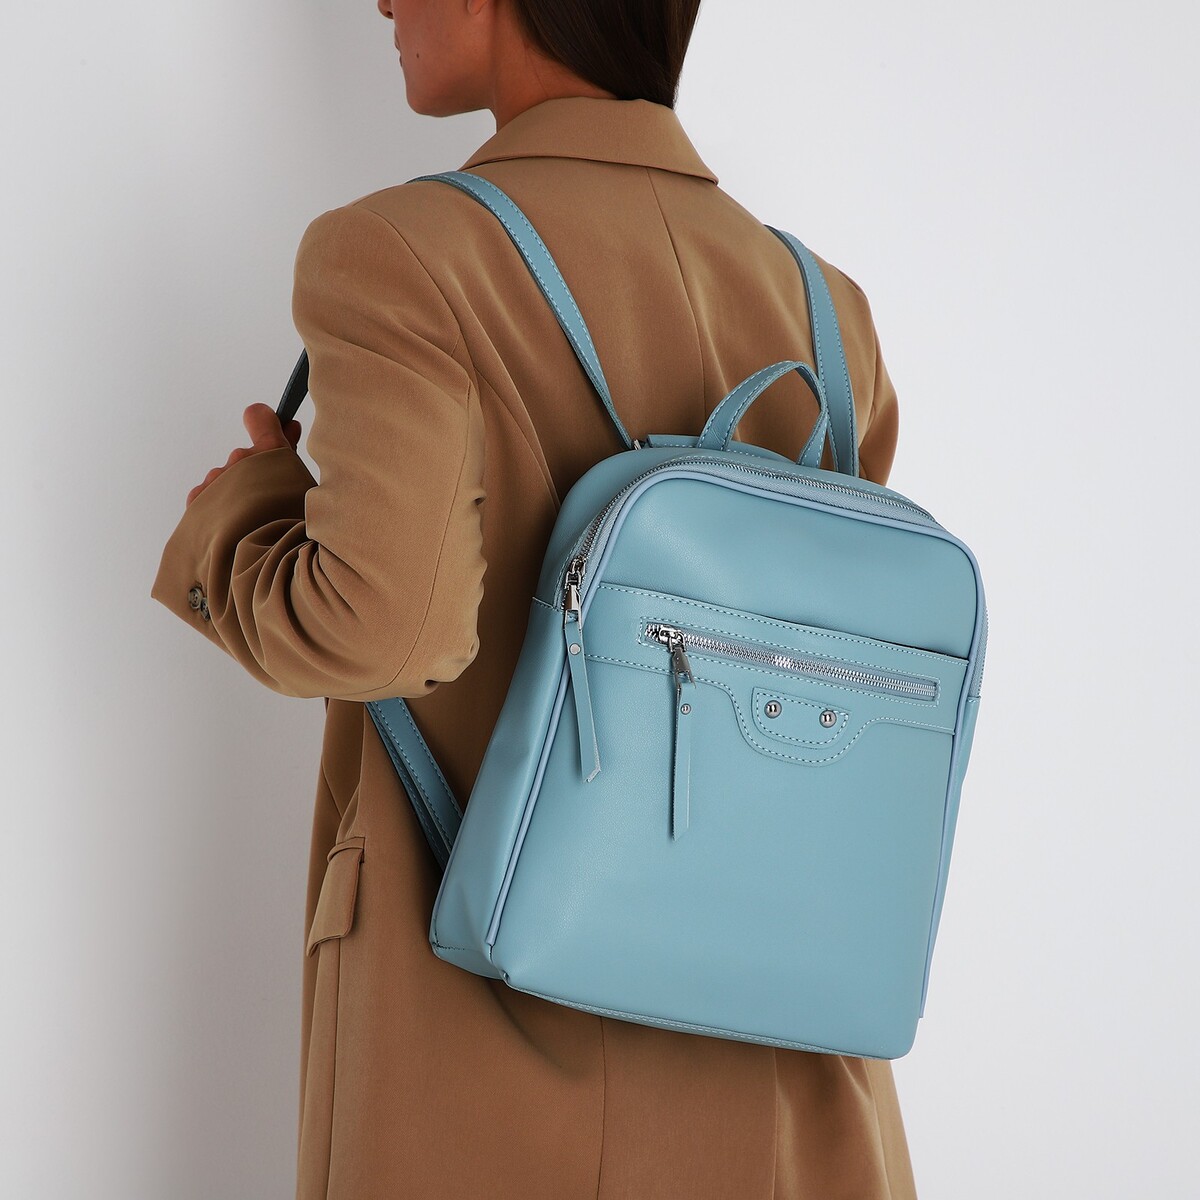 Рюкзак женский из искусственной кожи на молнии, 3 кармана, цвет голубой рюкзак женский из искусственной кожи на молнии 2 кармана зеленый